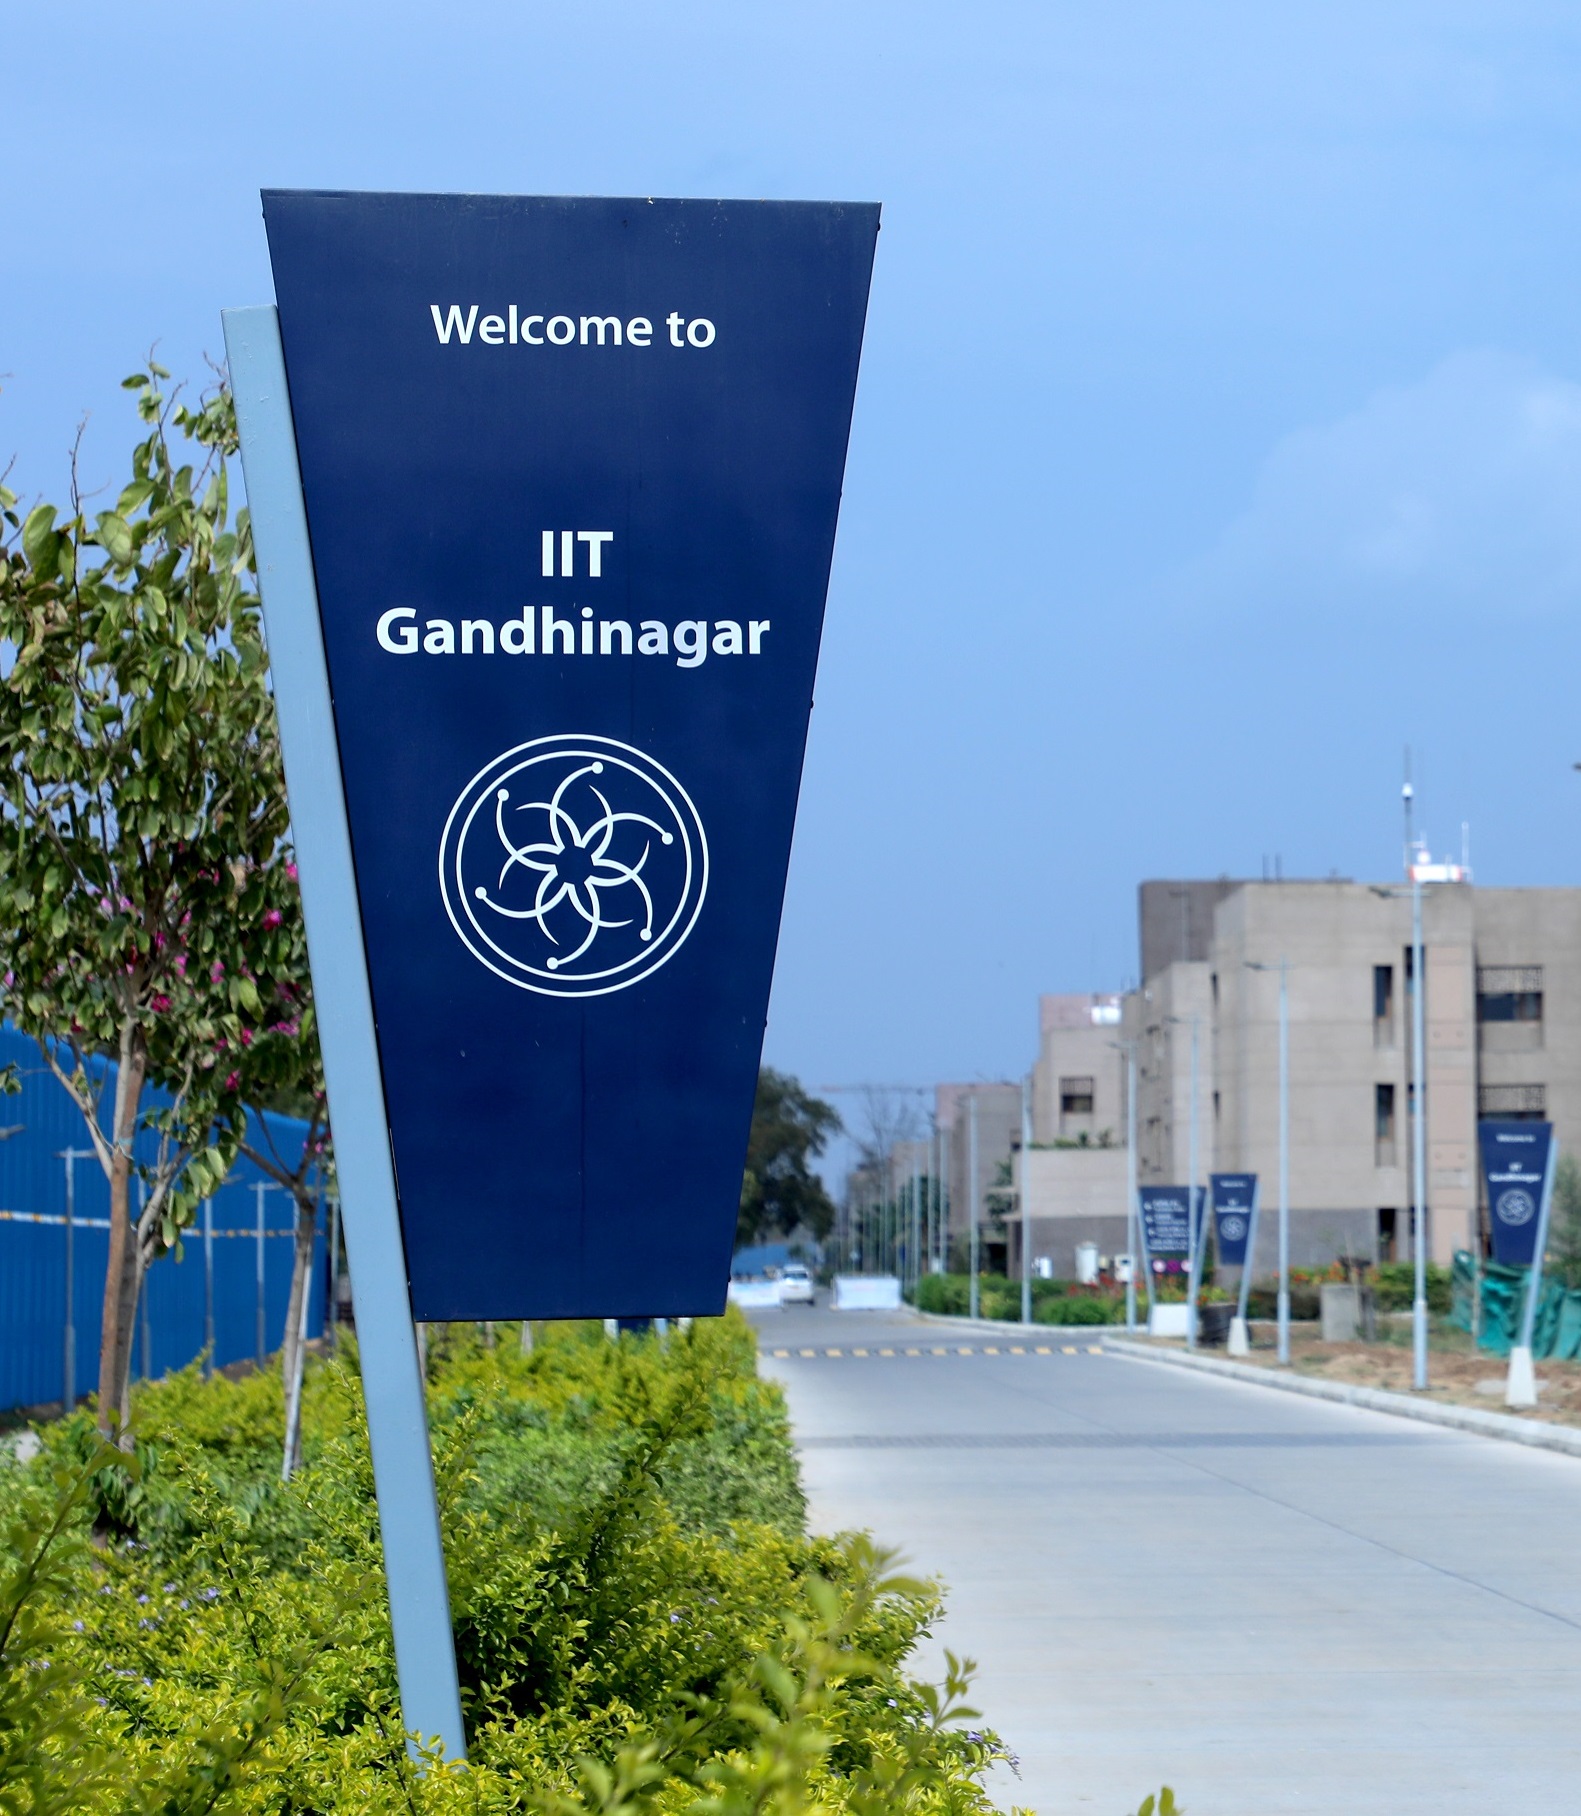 IIT Gandhinagar launches first online master's course; registration starts